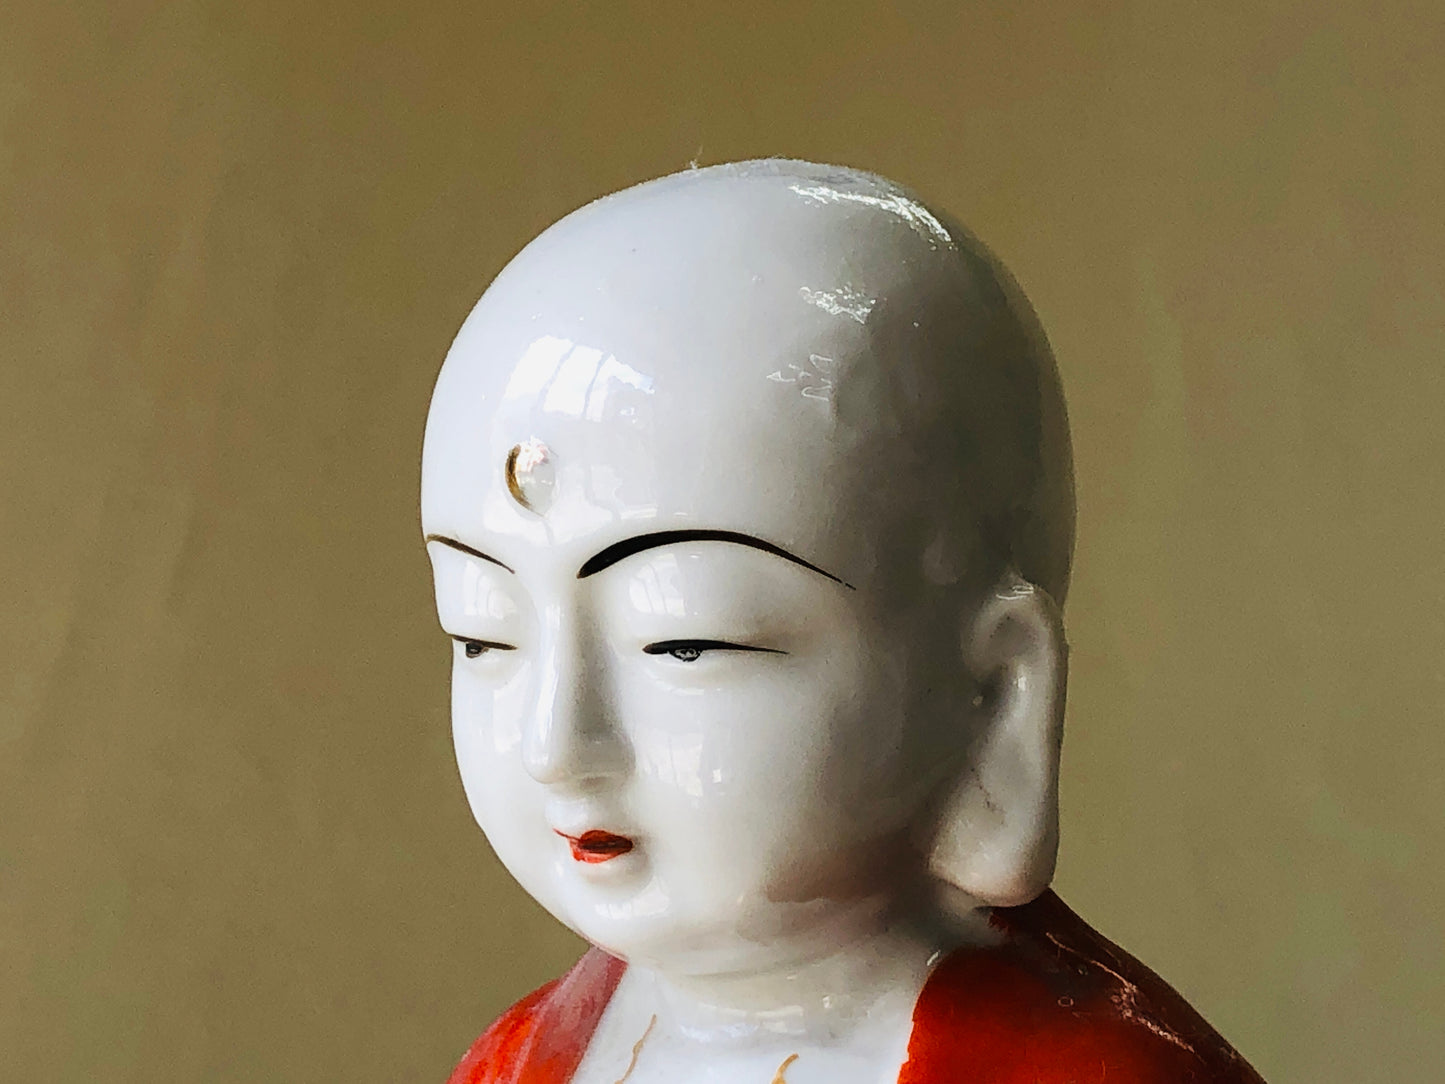 Y4362 STATUE Jizo Bodhisattva figure ceramics signed orange Japan antique